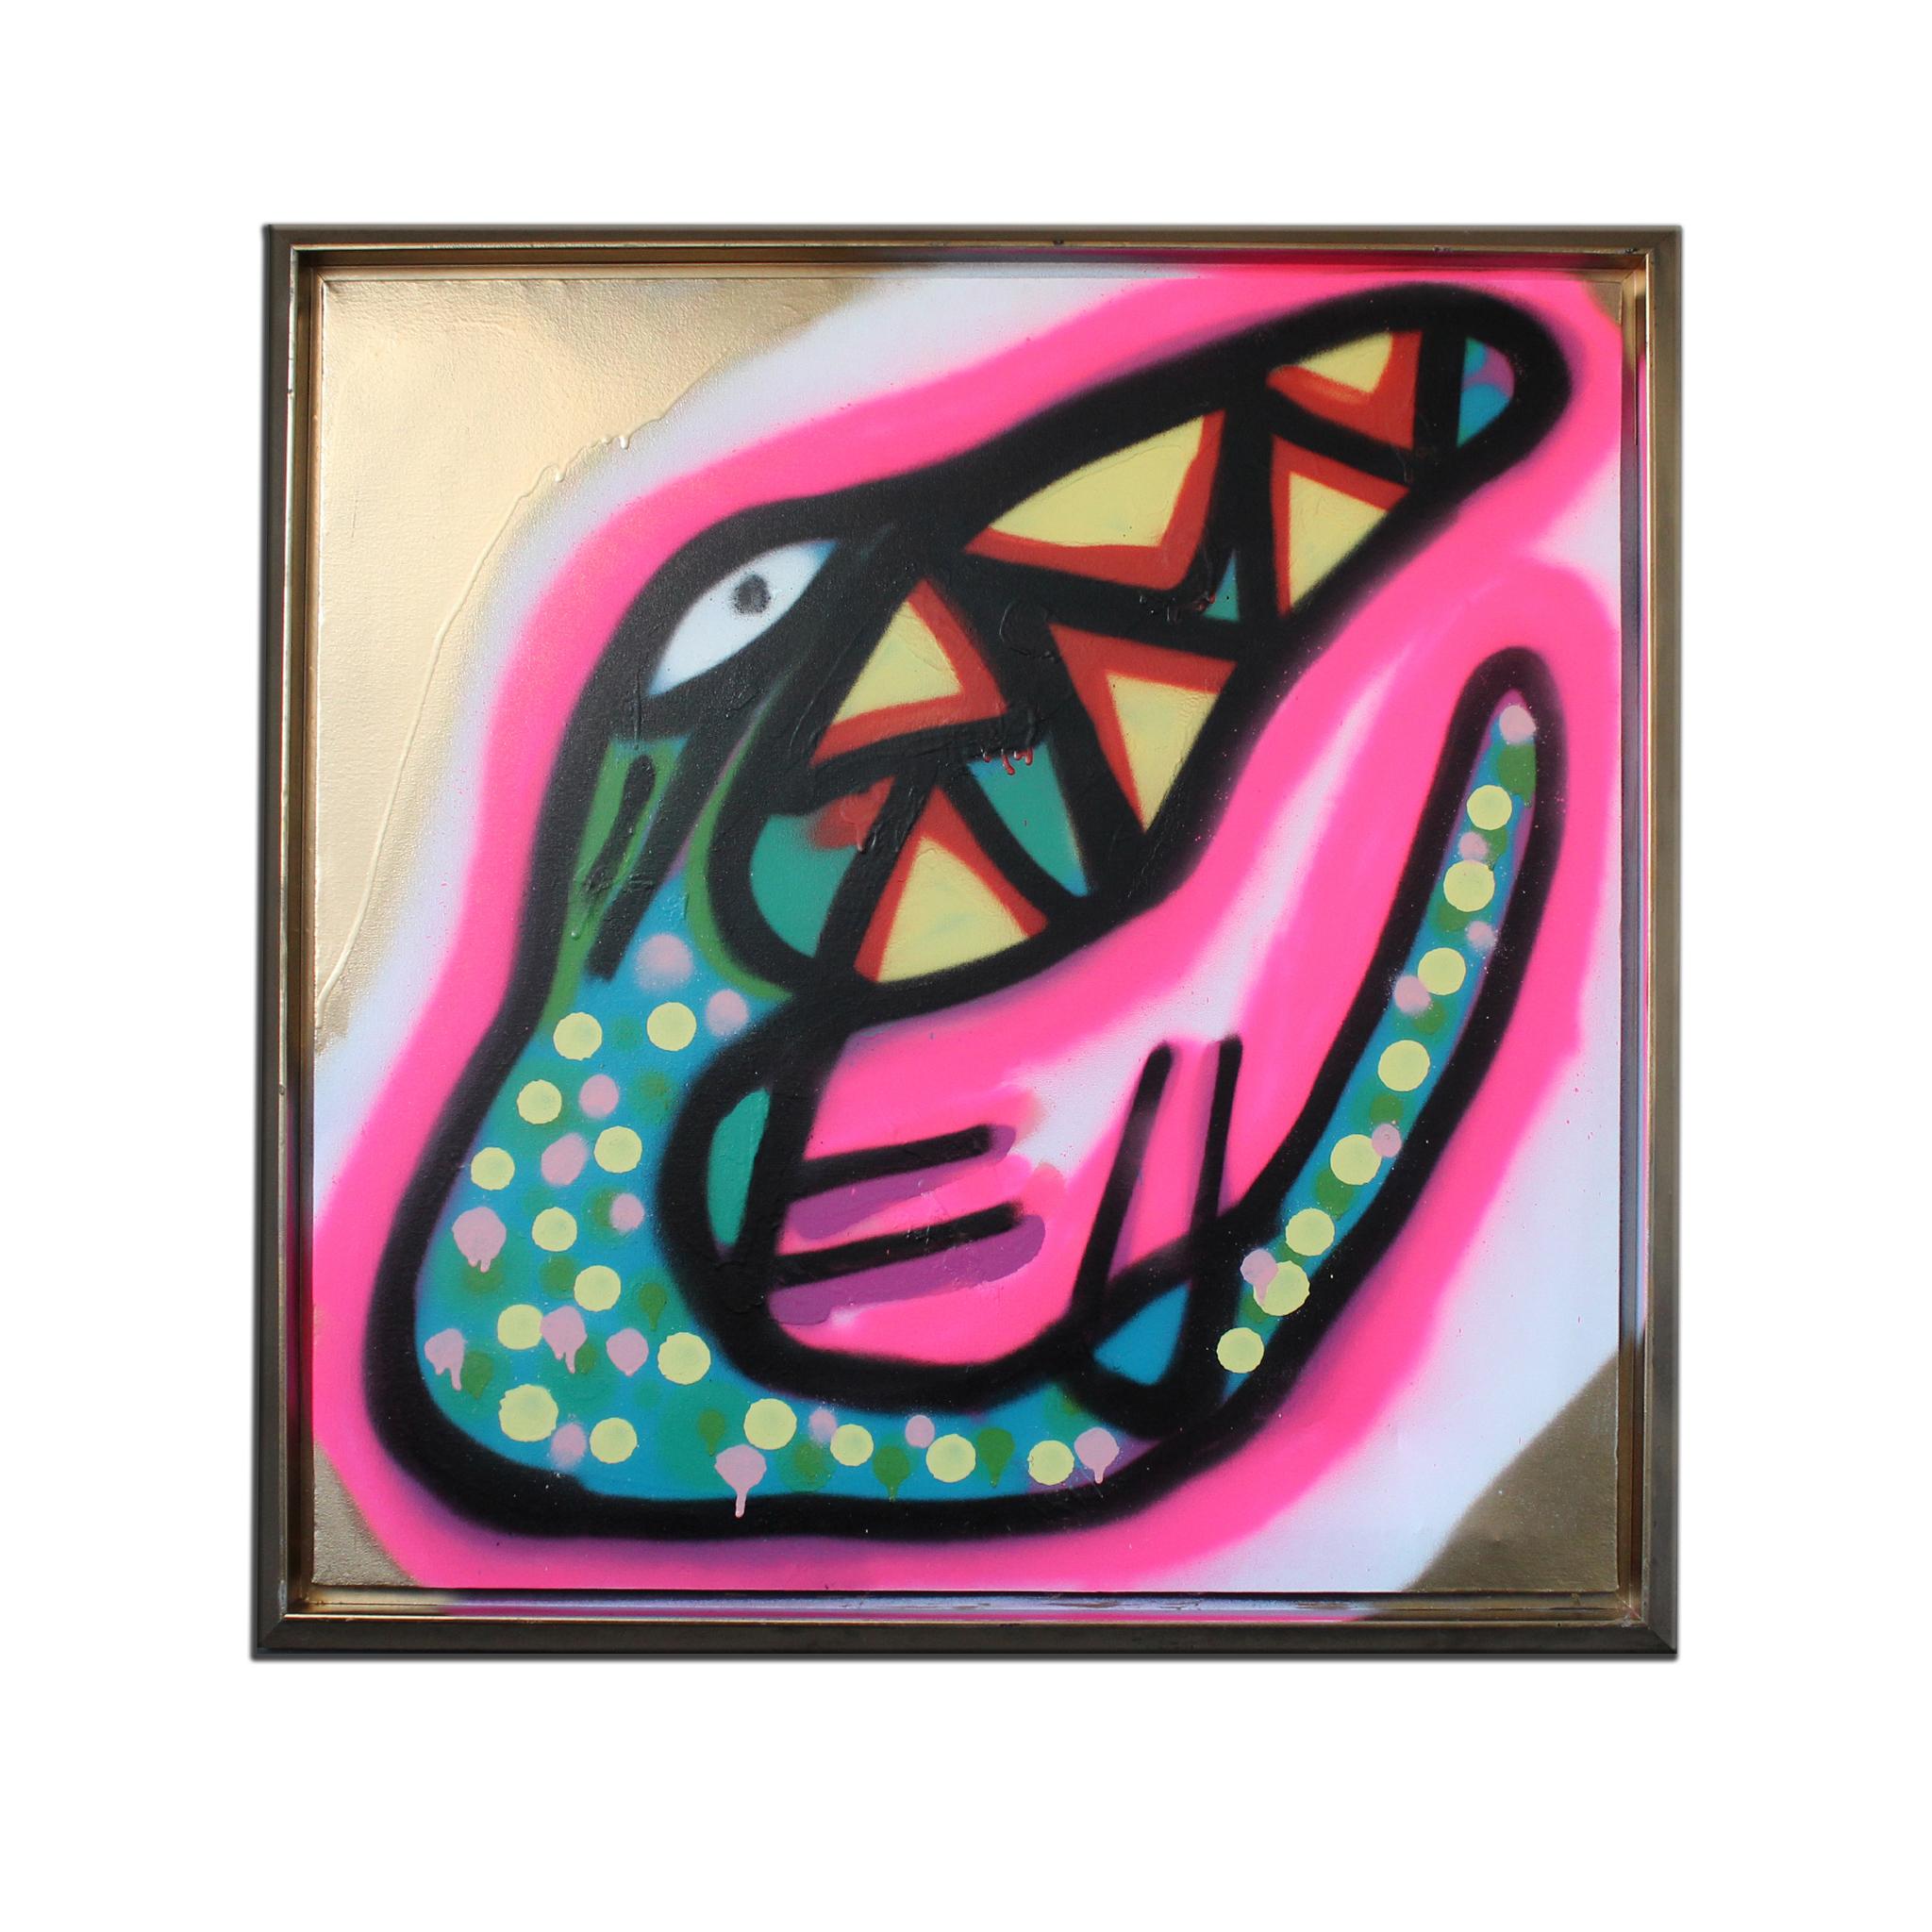 das gerahmte Leinwand-Originalgemälde "Untitled XX" zeigt ein Reptil in einer kühnen, exzentrischen Street-Art-Ästhetik, die in leuchtenden Gold-, Rosa-, Grün-, Blau-, Gelb-, Lila-, Weiß- und Rottönen gehalten ist. Mit der Sprühdose in der Hand